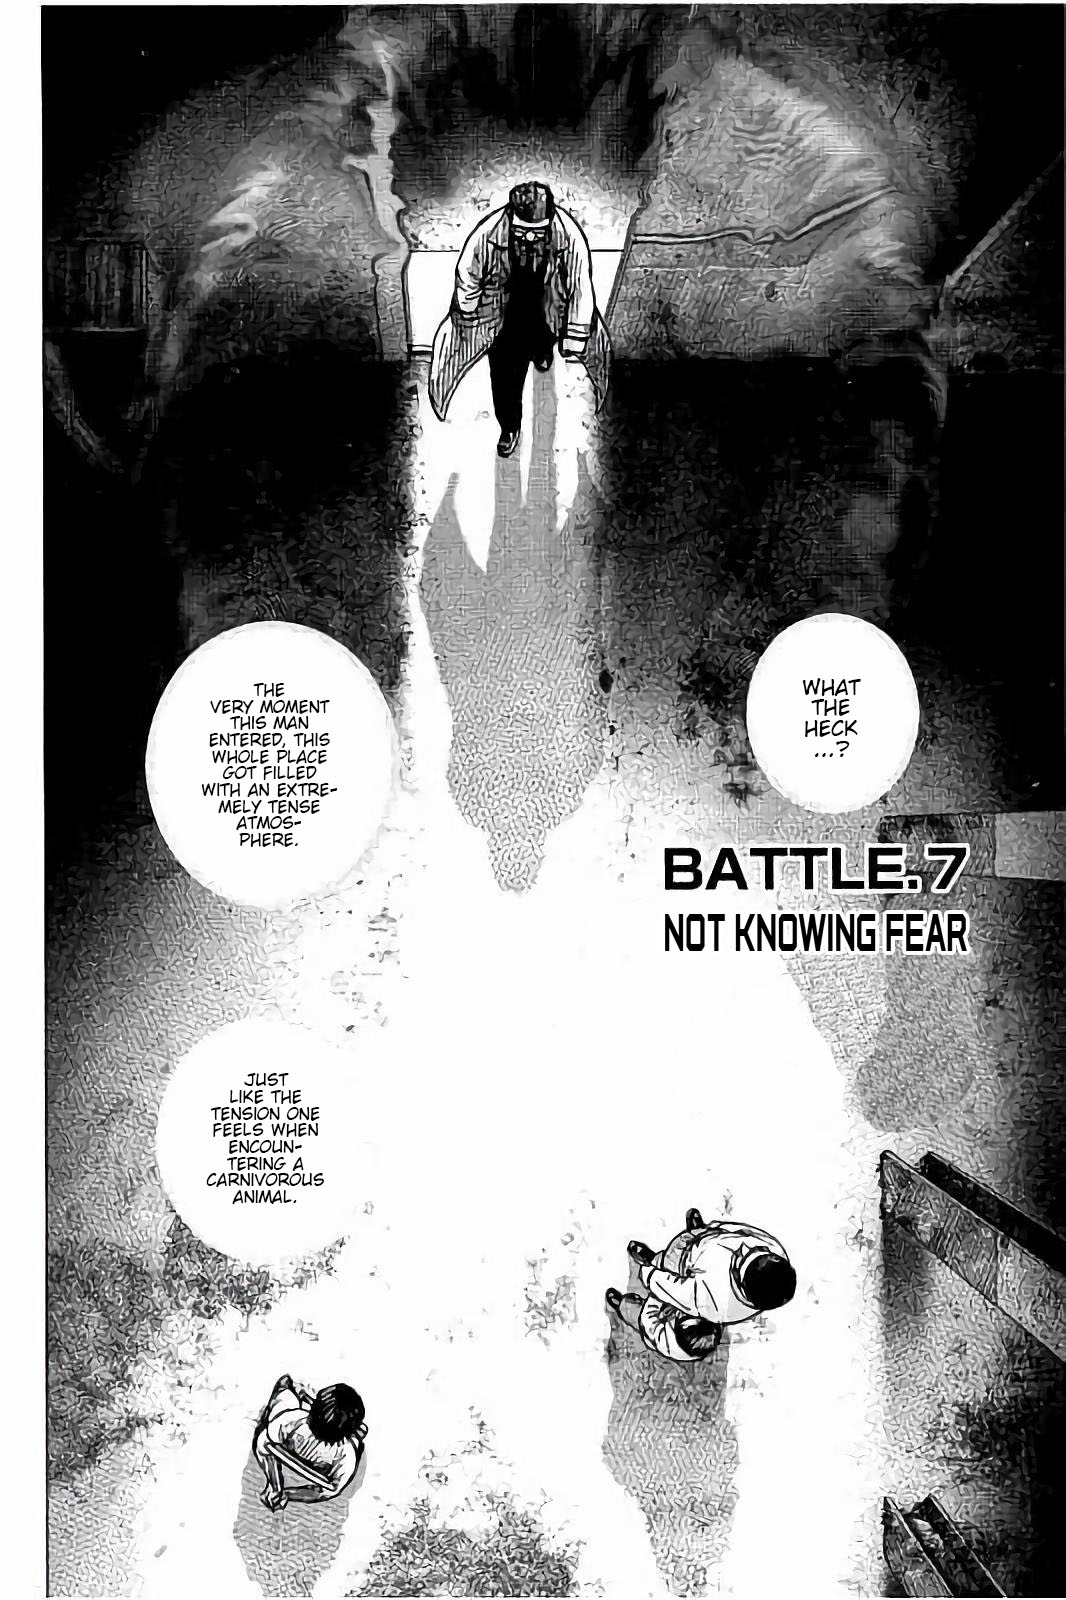 Tough Gaiden - Ryuu Wo Tsugu Otoko Vol.1 Chapter 7: Not Knowing Fear - Picture 2